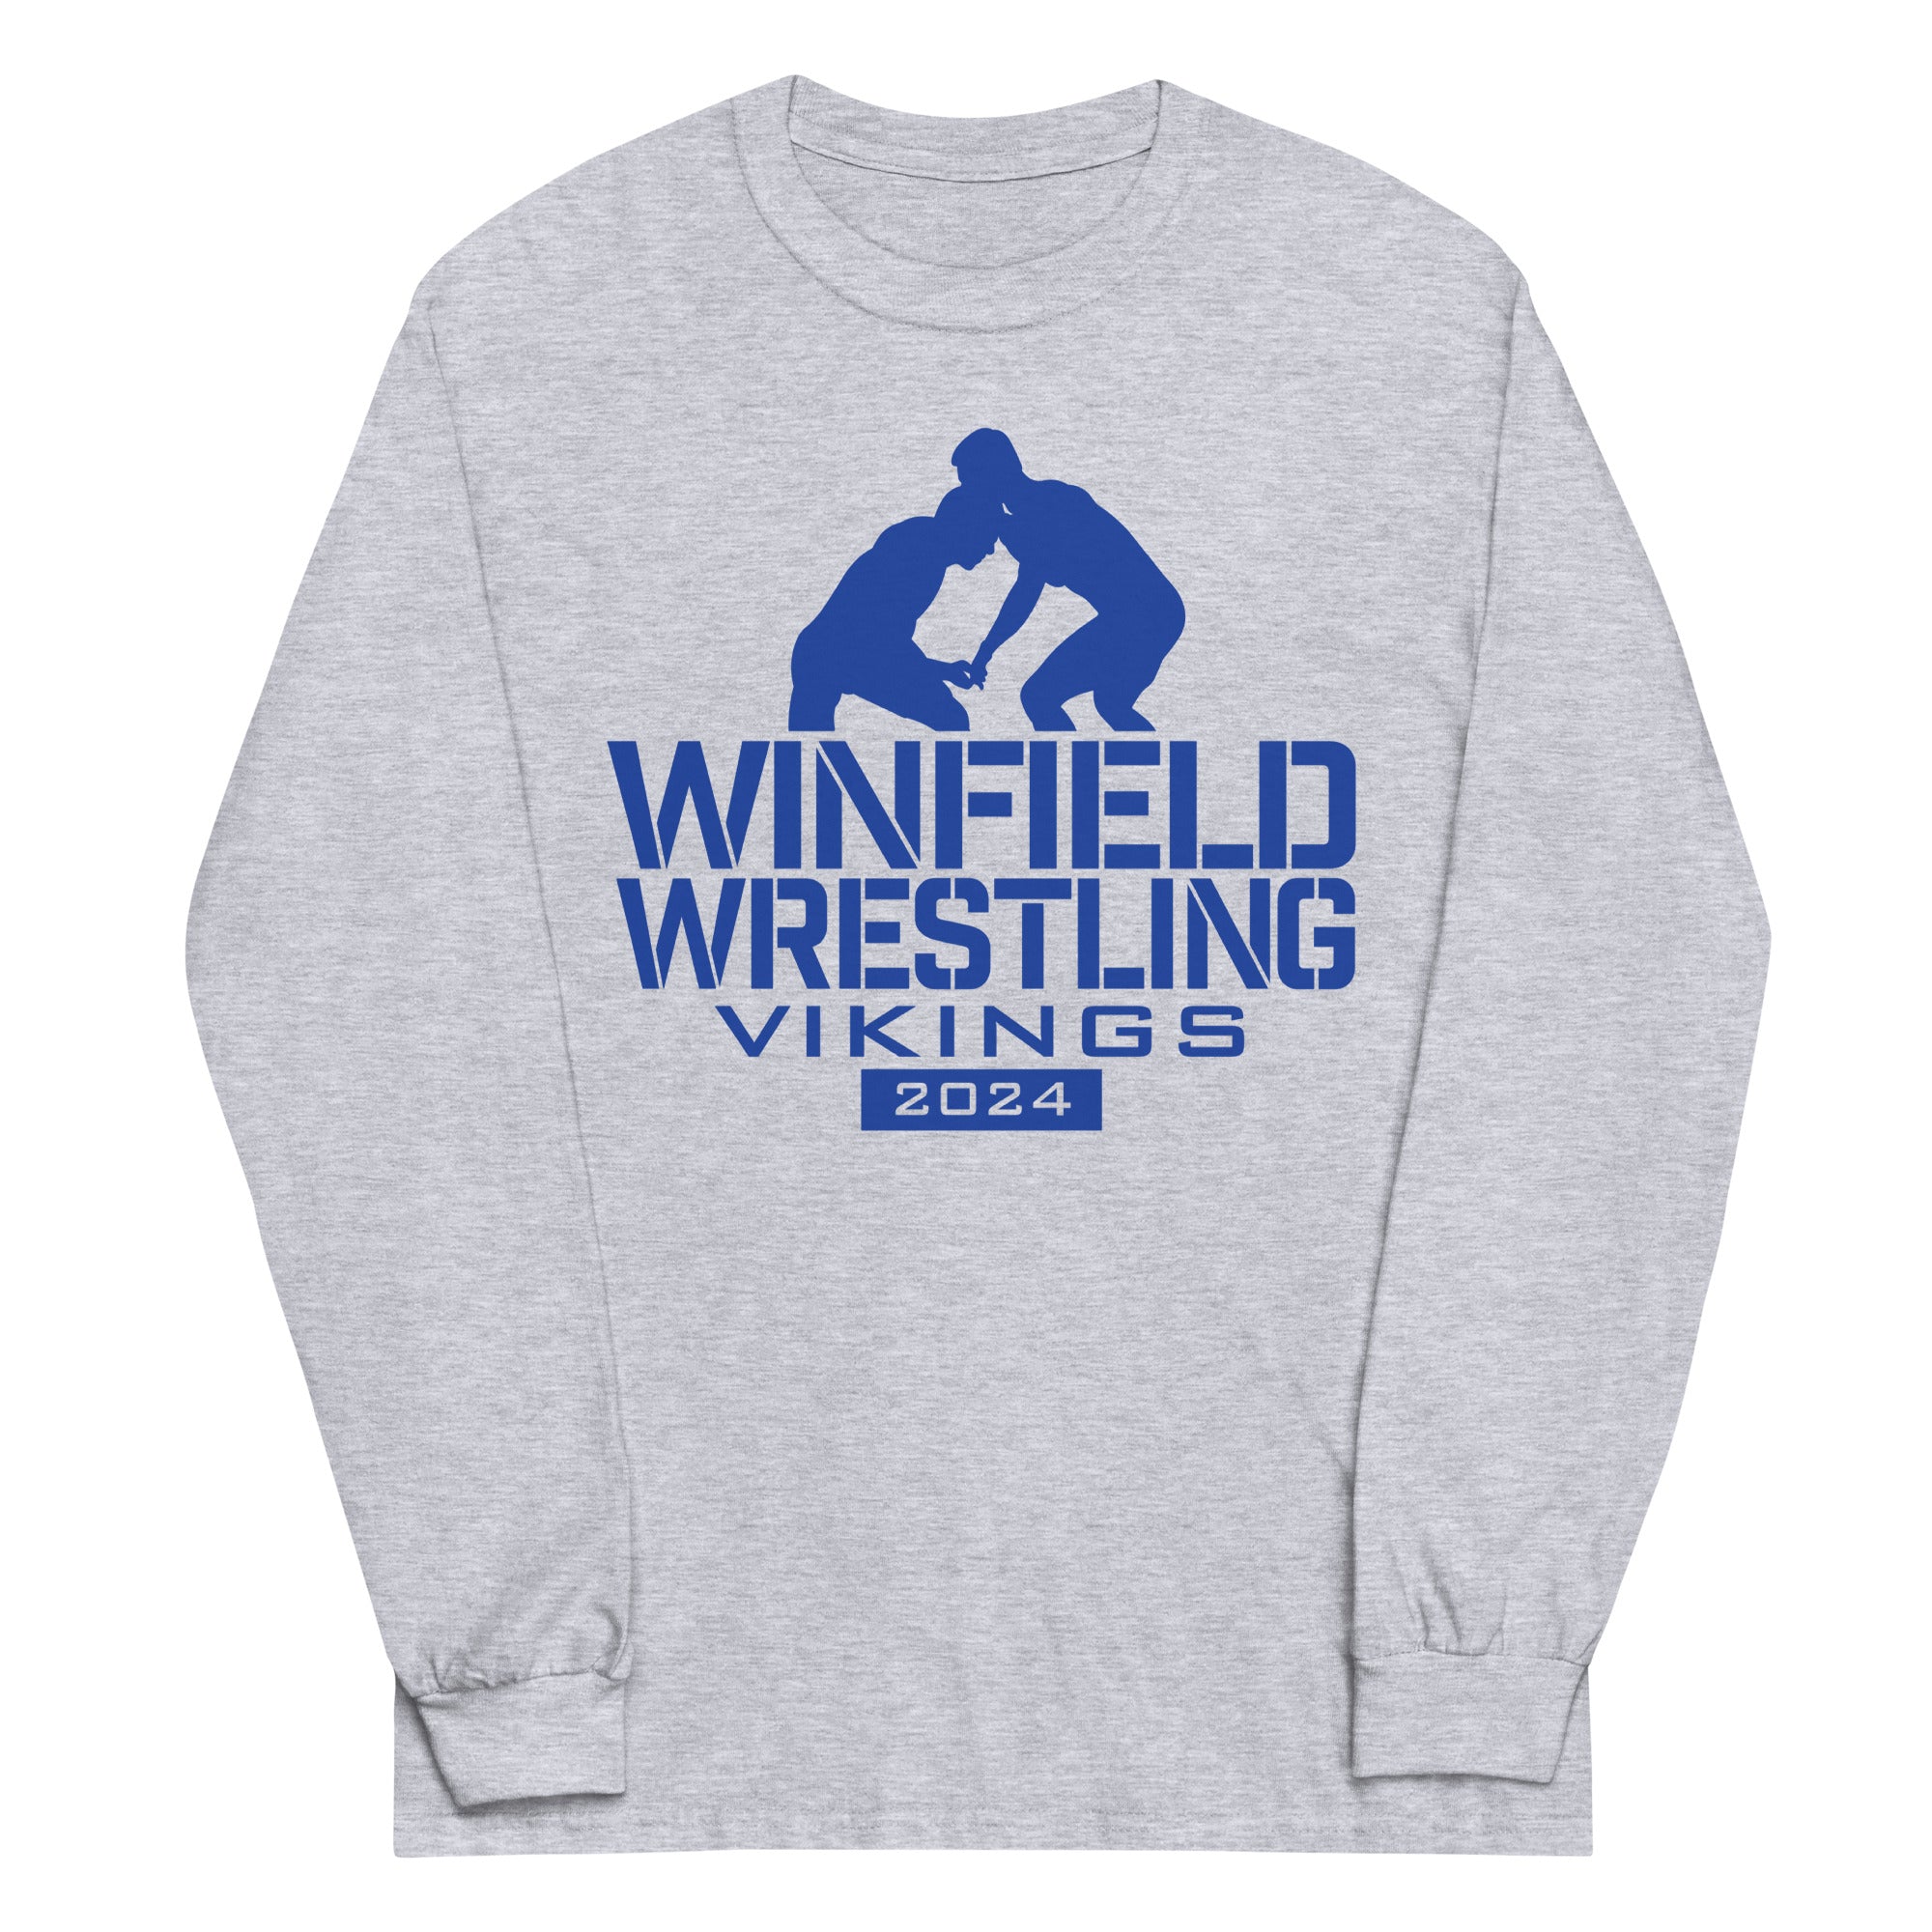 Winfield Wrestling Vikings 2024 Men’s Long Sleeve Shirt